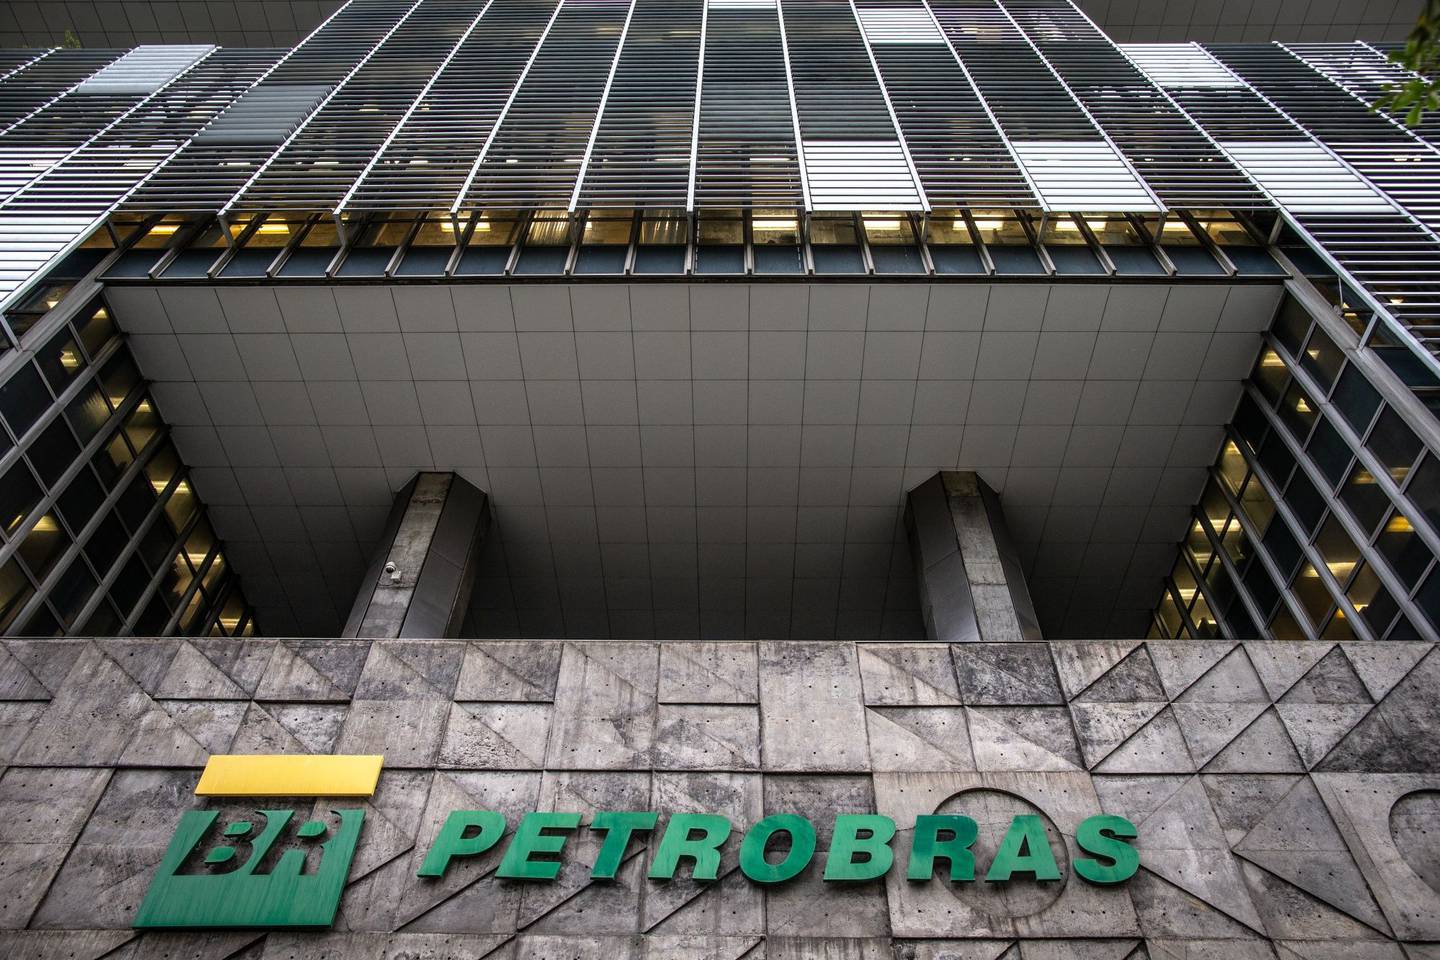 The Petroleo Brasileiro SA (Petrobras) headquarters in Rio de Janeiro, Brazil.